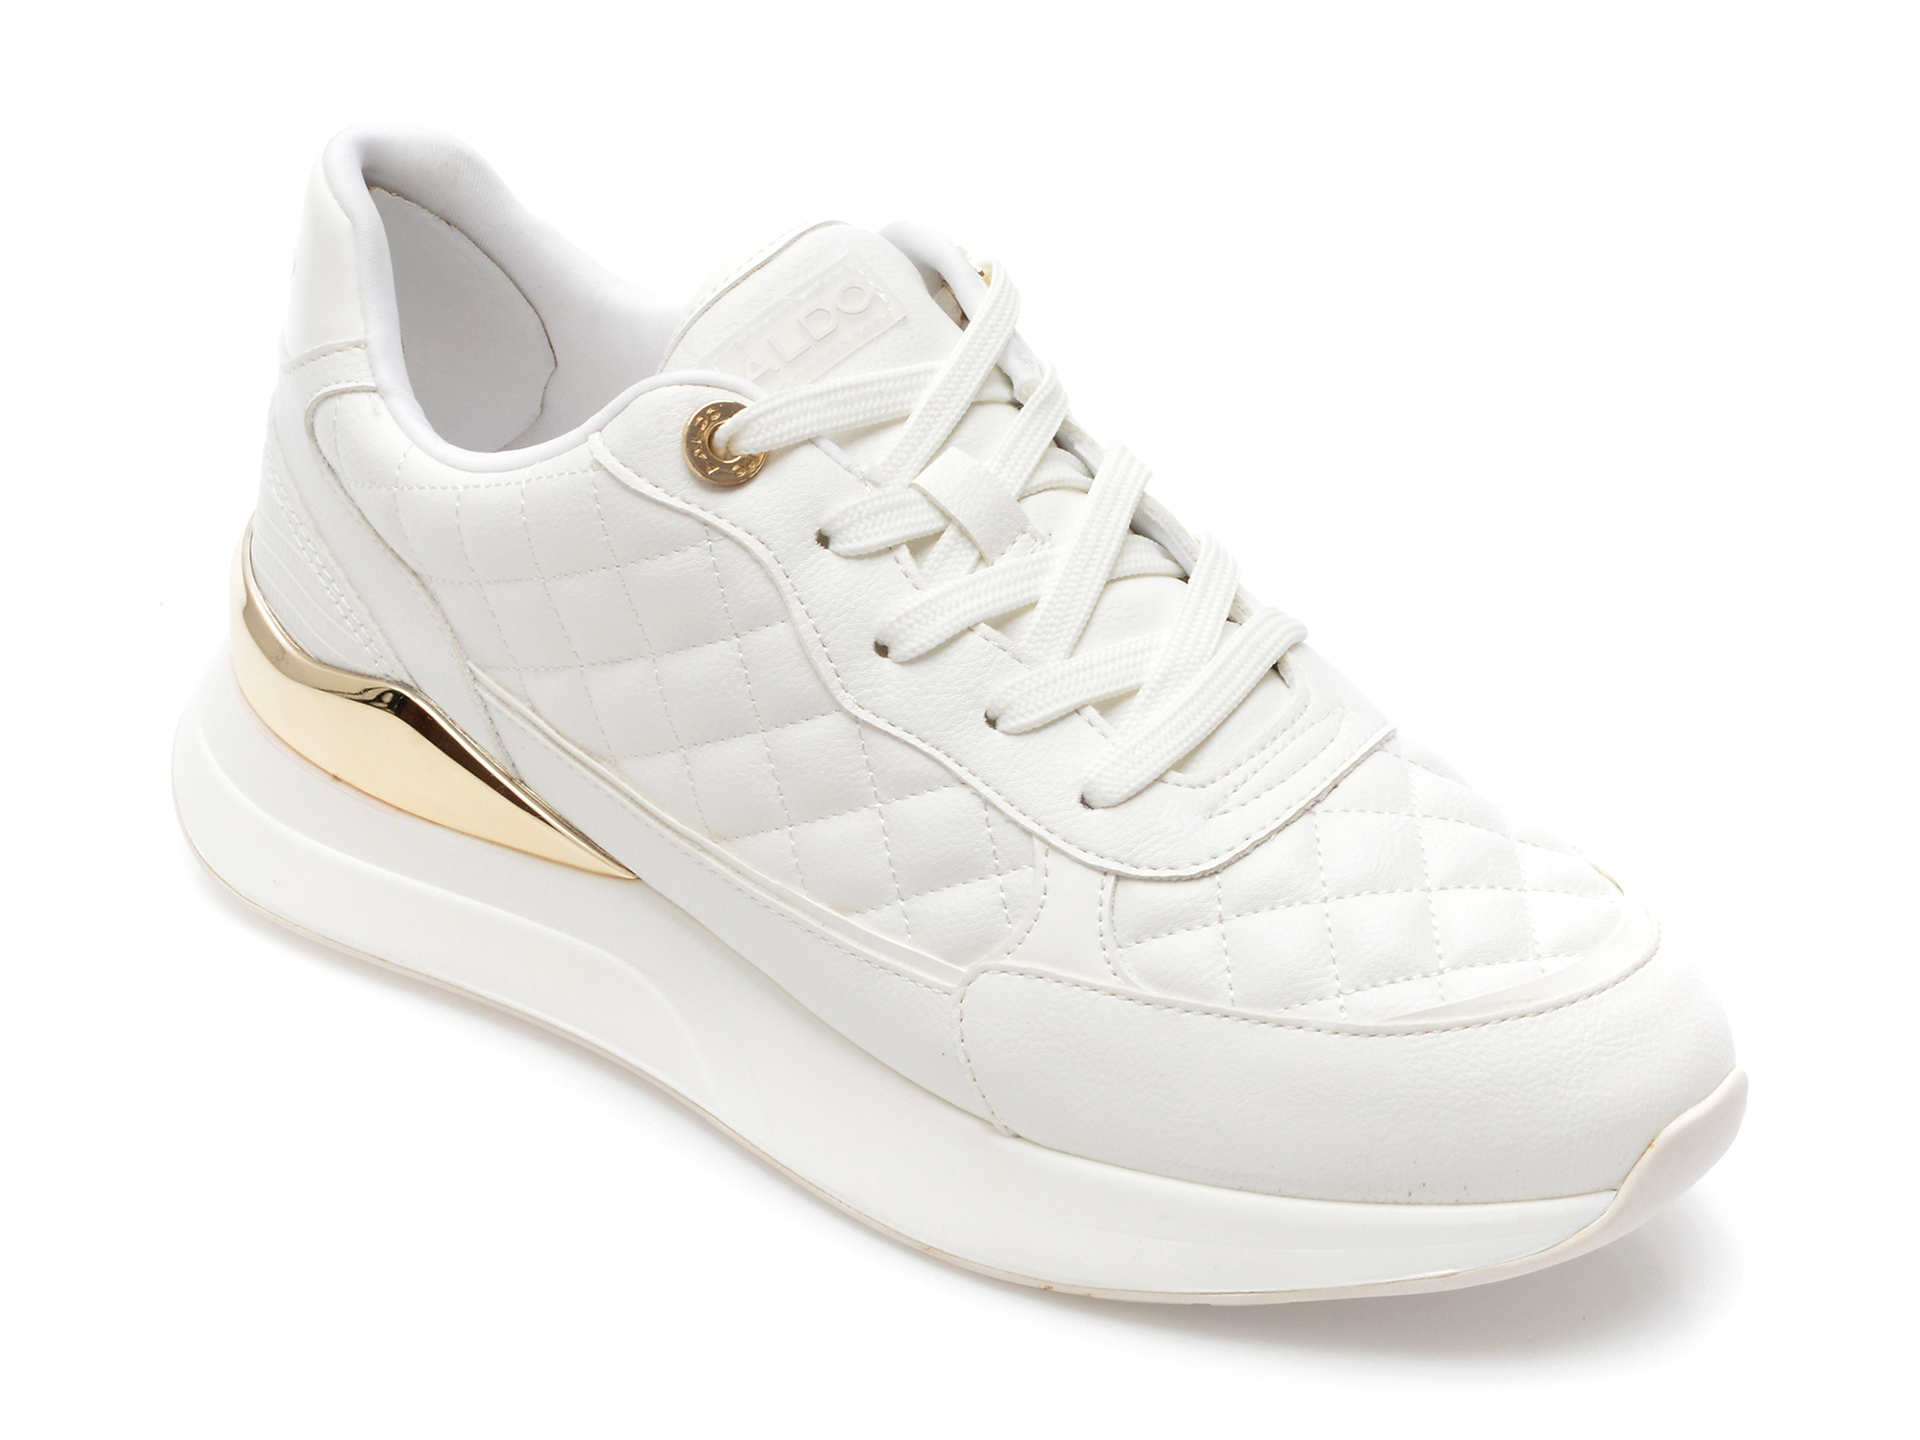 Pantofi ALDO albi, COSMICSTEP100, din piele ecologica femei 2023-03-19